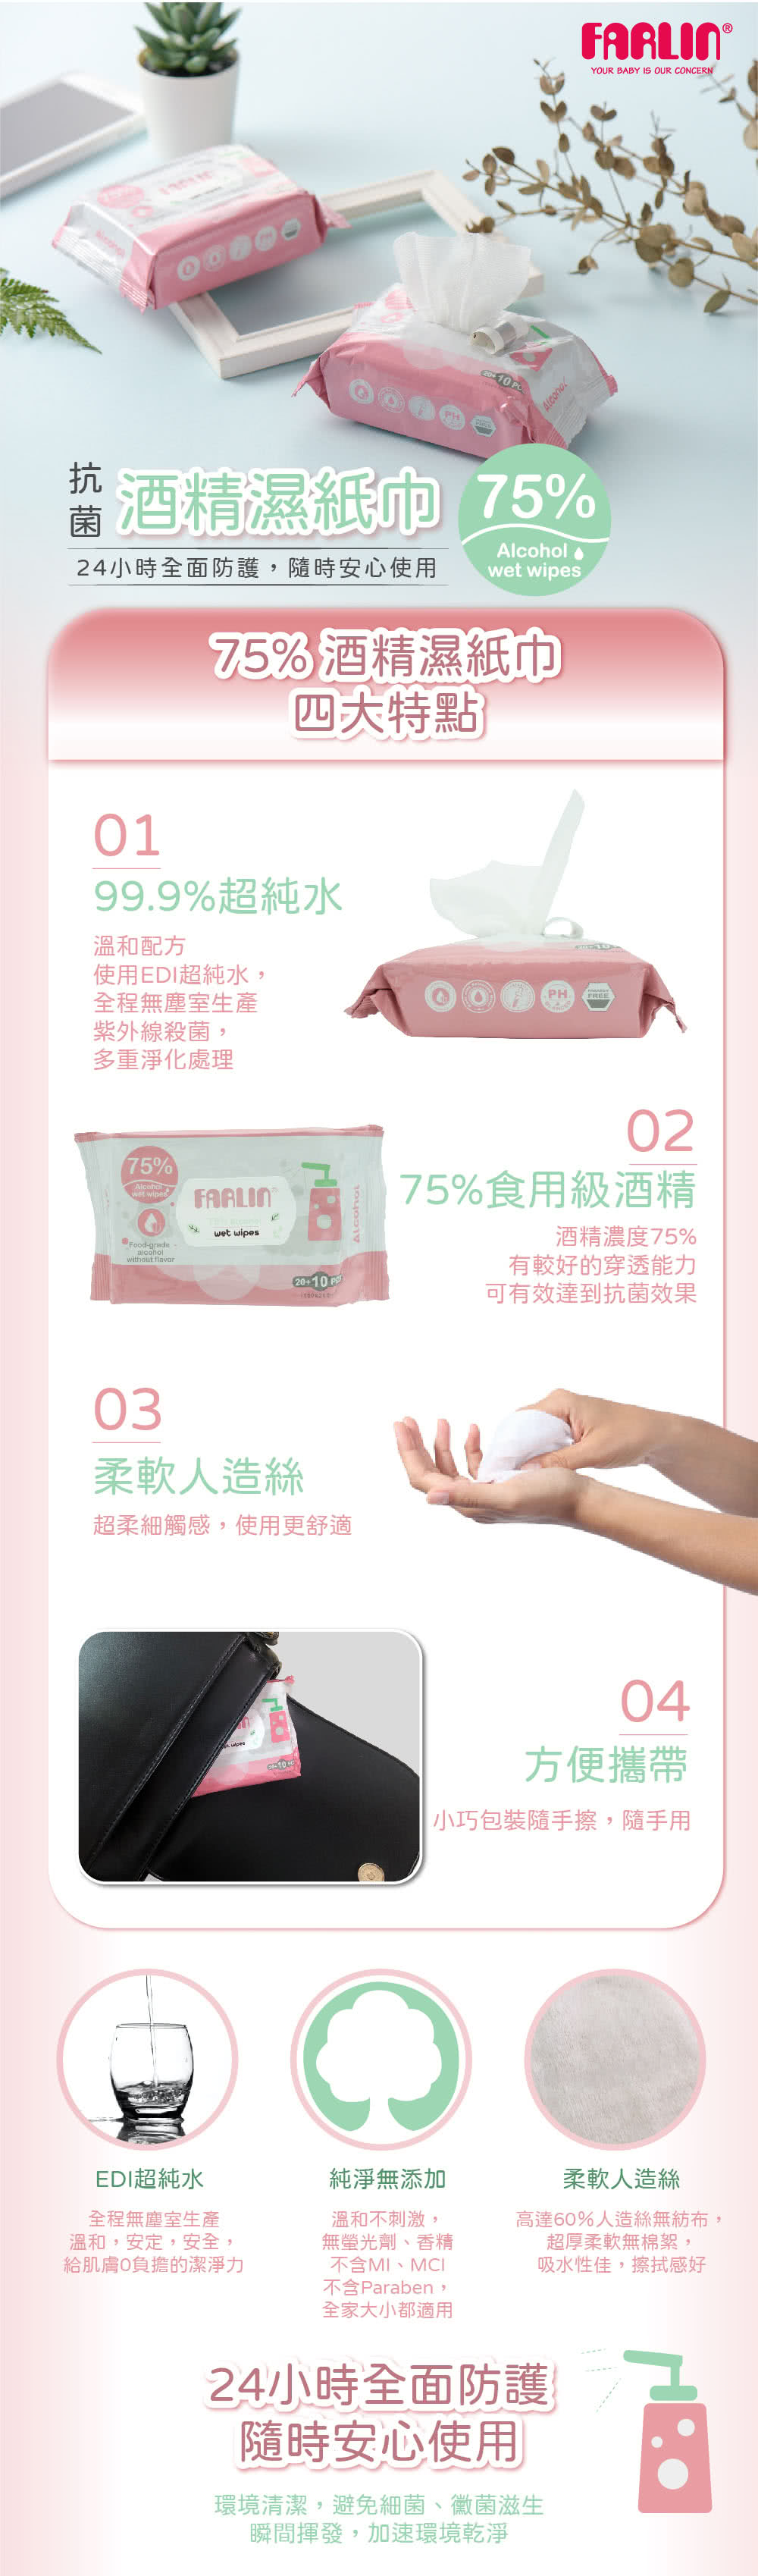 Farlin 酒精抗菌濕紙巾(30抽/24入組)折扣推薦